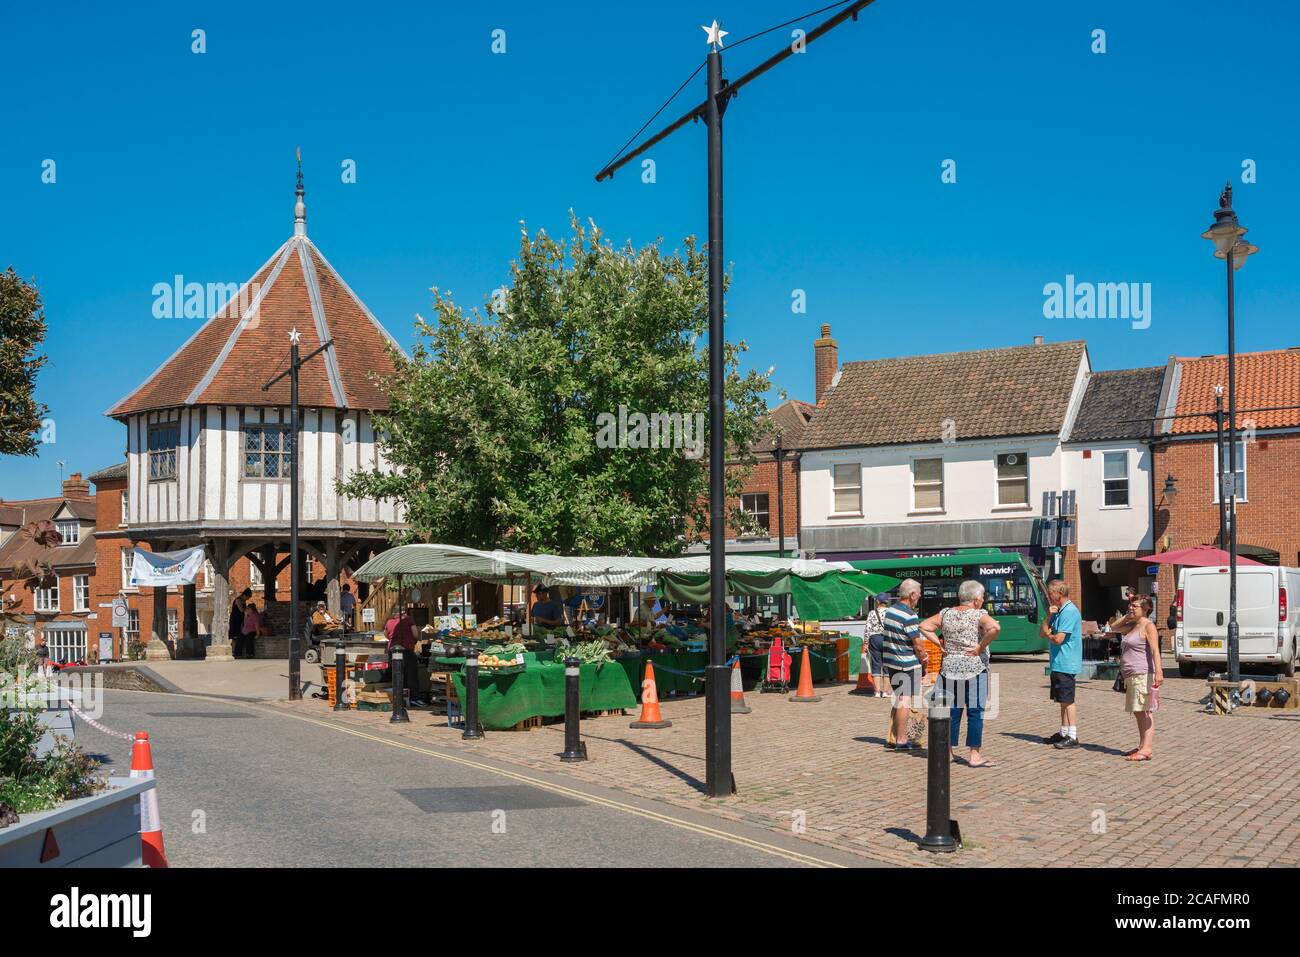 Persone inglesi, vista in estate di persone che chiacchierano il giorno del mercato nel centro della città di Wymondham, Norfolk, East Anglia, Inghilterra, Regno Unito Foto Stock